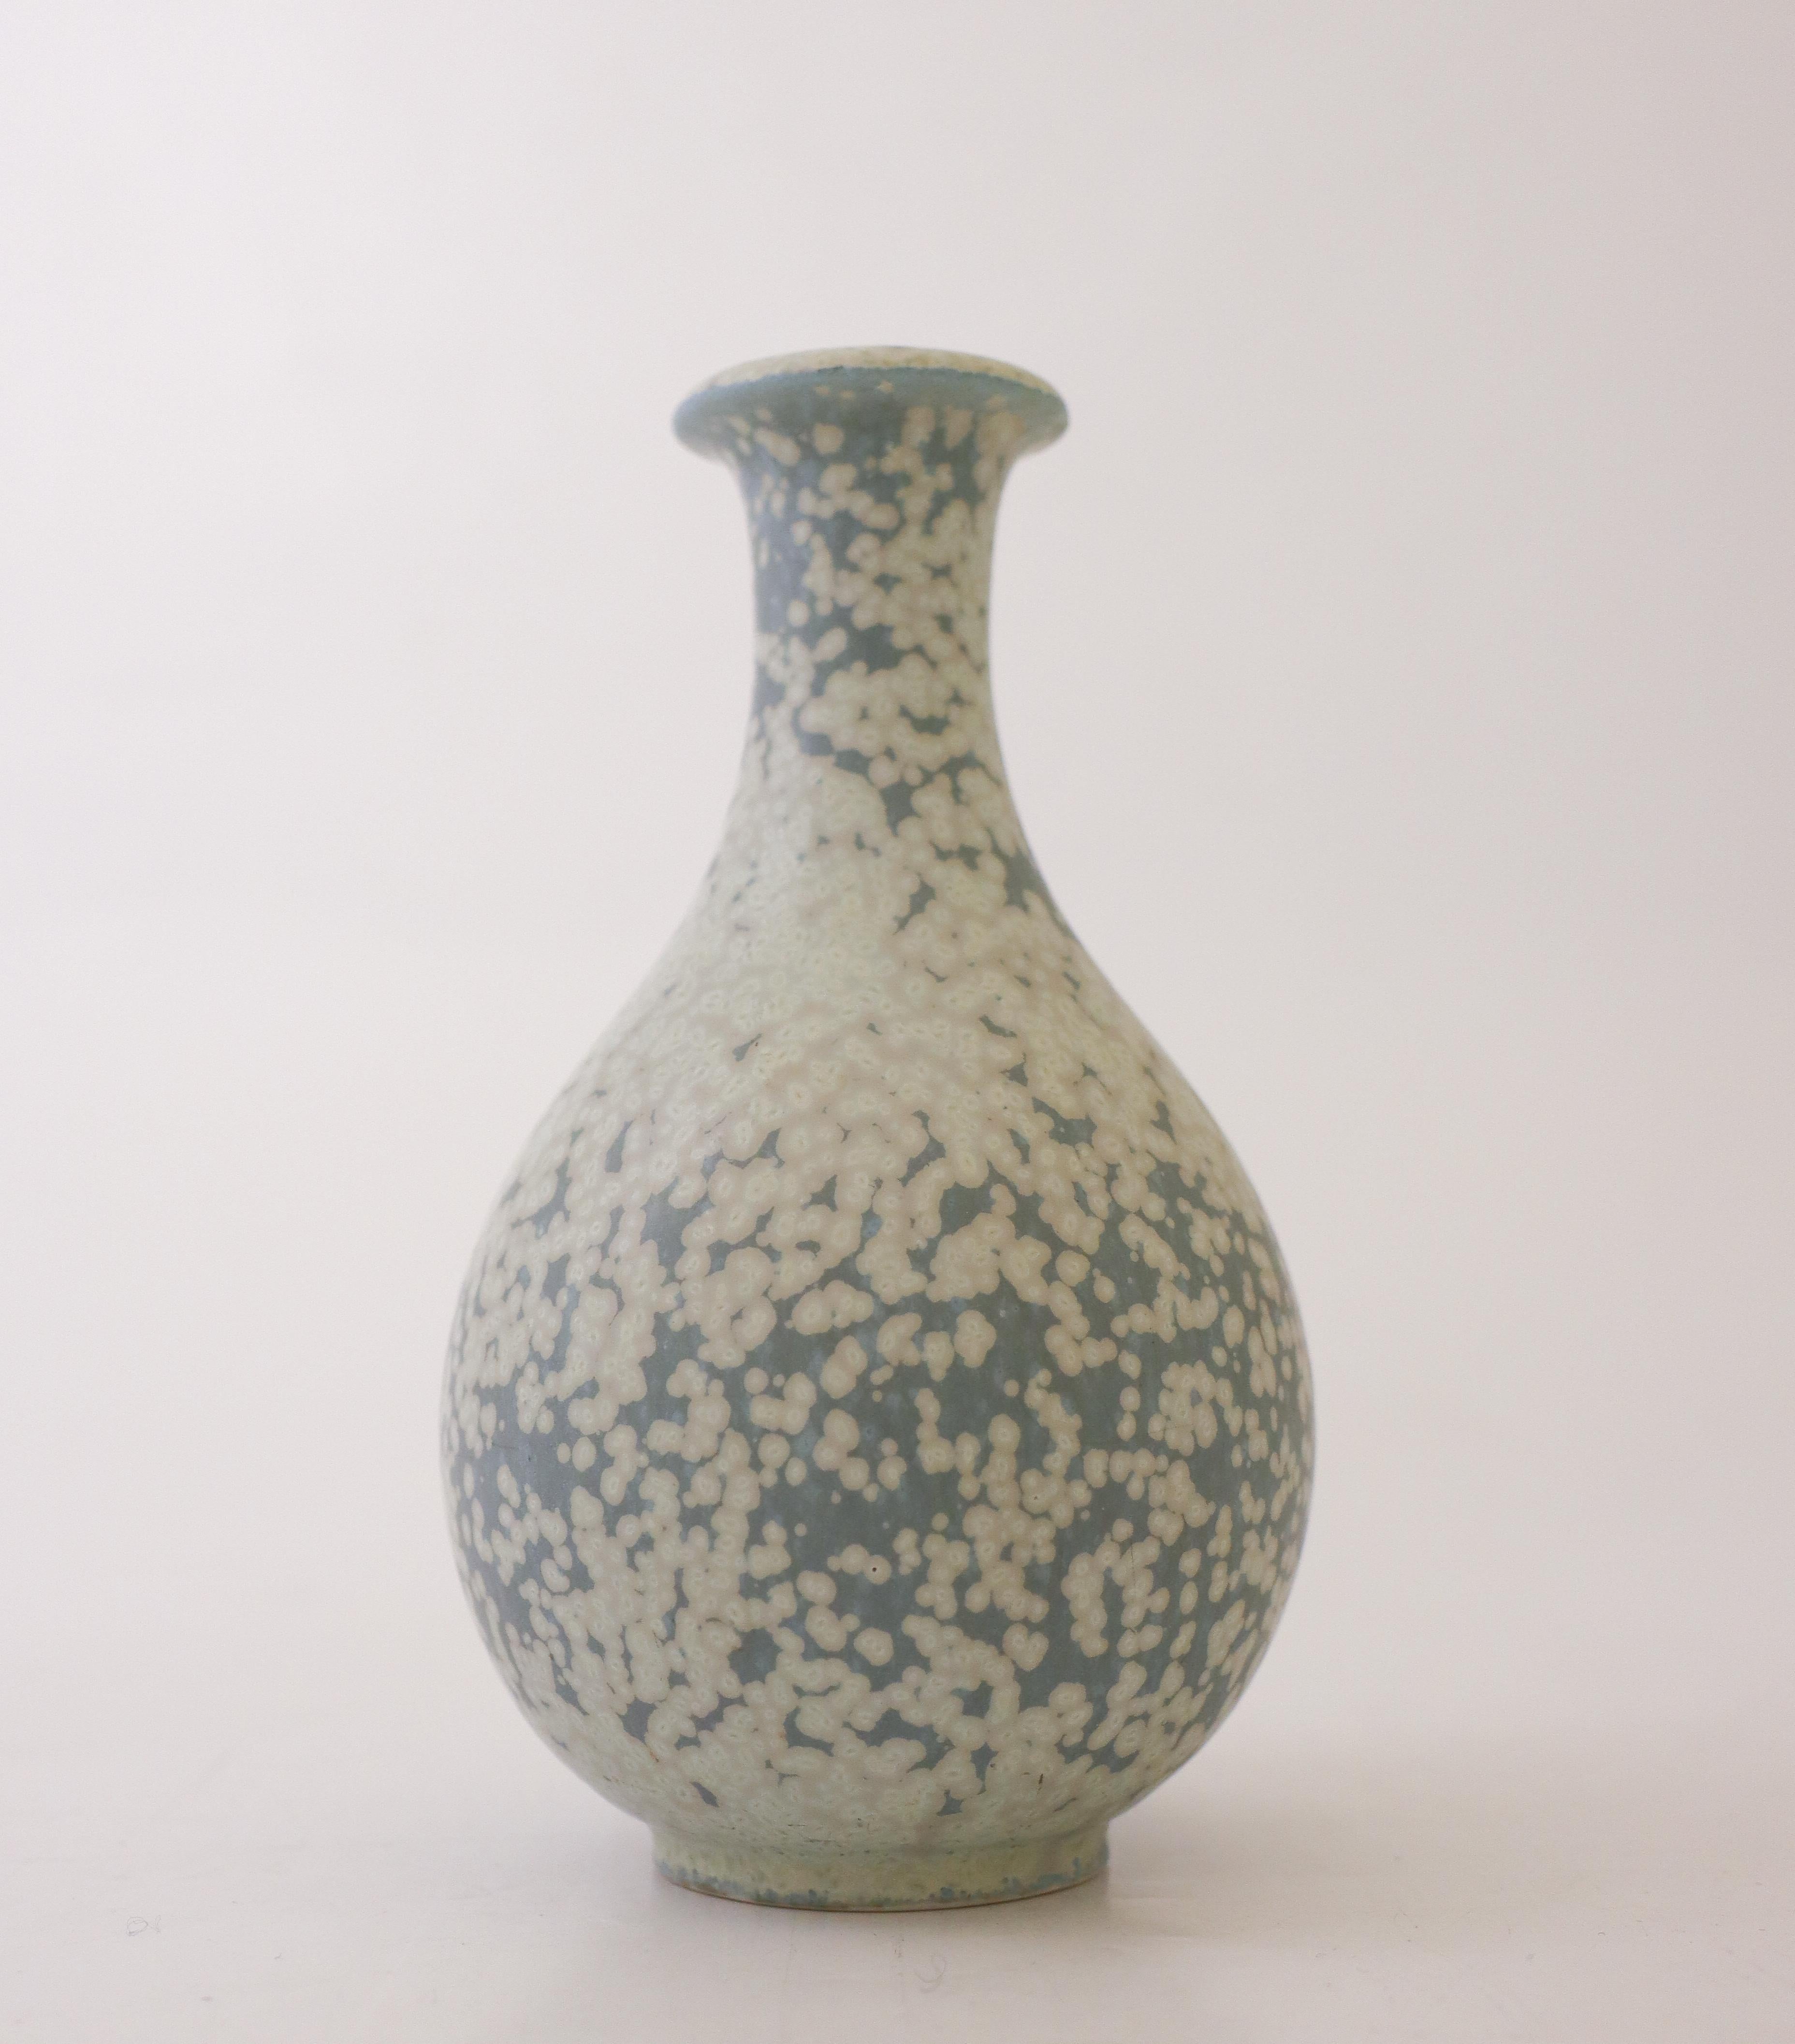 Un joli vase moucheté gris/bleu conçu par Gunnar Nylund chez Rörstrand. Le vase mesure 14,5 cm de haut et 8,5 cm de diamètre. Il est en parfait état et marqué comme étant de première qualité. 

Gunnar Nylund est né à Paris en 1904 de parents